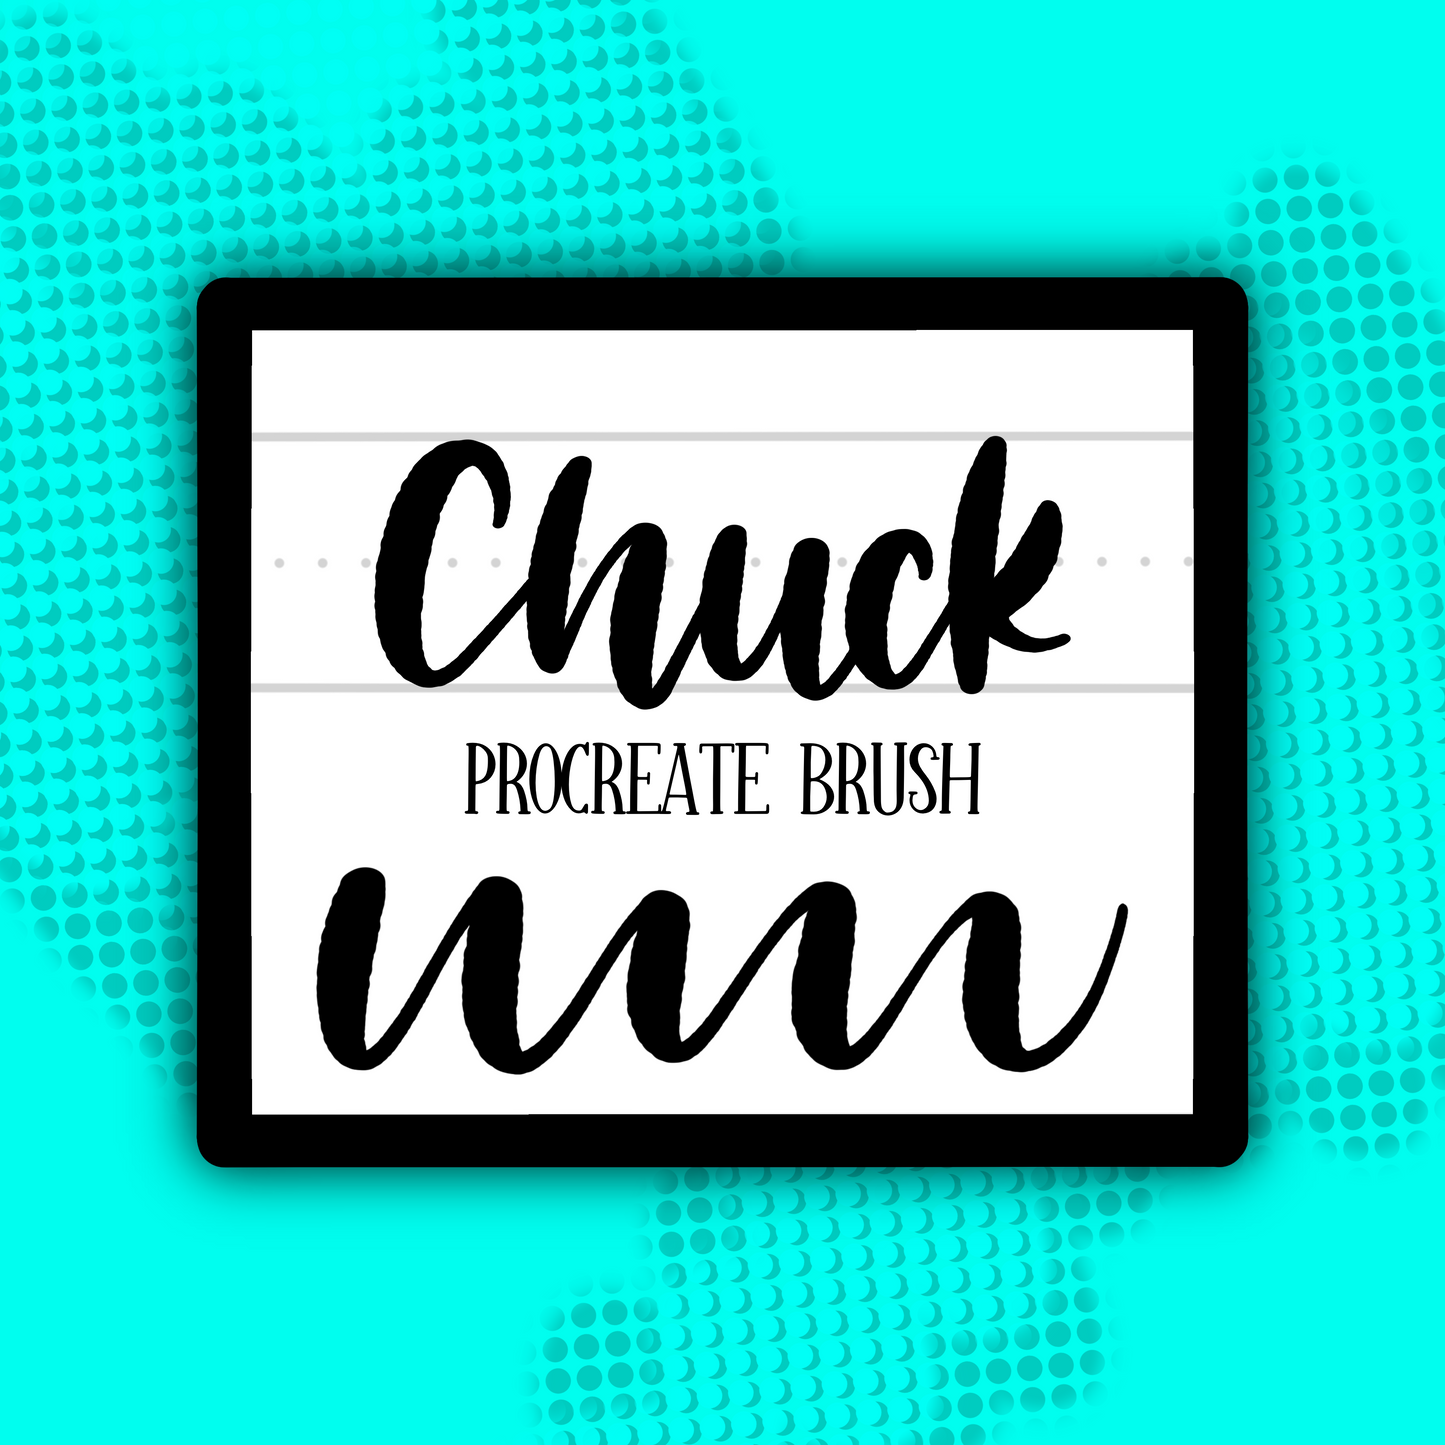 Chuck PROCREATE BRUSH